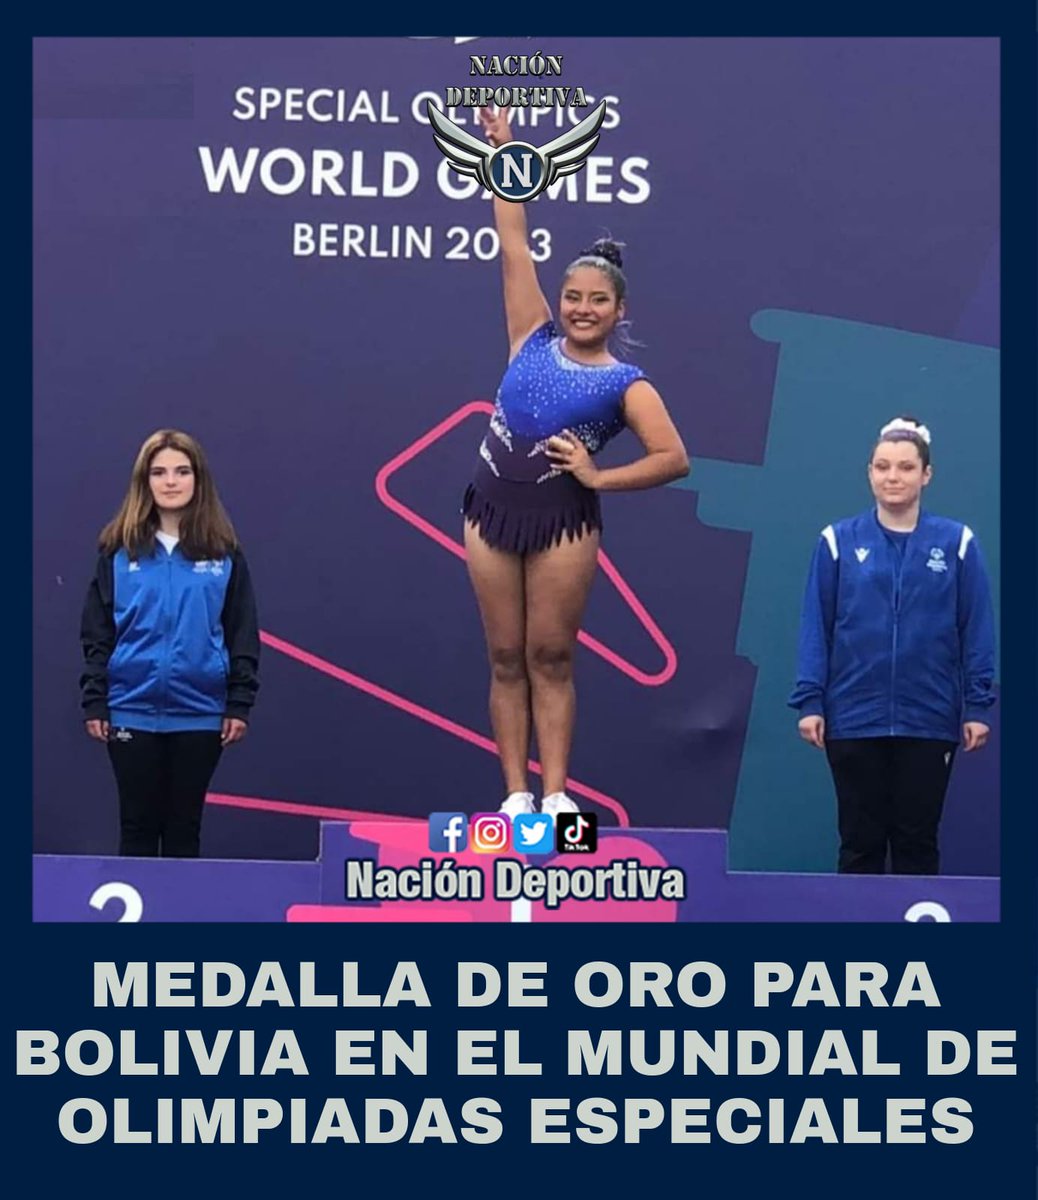 🔥ORO PARA BOLIVIA🇧🇴🌟🤸‍♀️🥇 

✅Gloria Andrea Poichee🇧🇴 conquistó la medalla de oro🥇 en #GimnasiaRítmica 🤸‍♀durante los Juegos Mundiales 🔝de Olimpiadas Especiales Berlín 2023💪🏼

💡Síguenos en Instagram⬇️
instagram.com/naciondeportiv…
#OrgulloBoliviano 🇧🇴🇧🇴🇧🇴